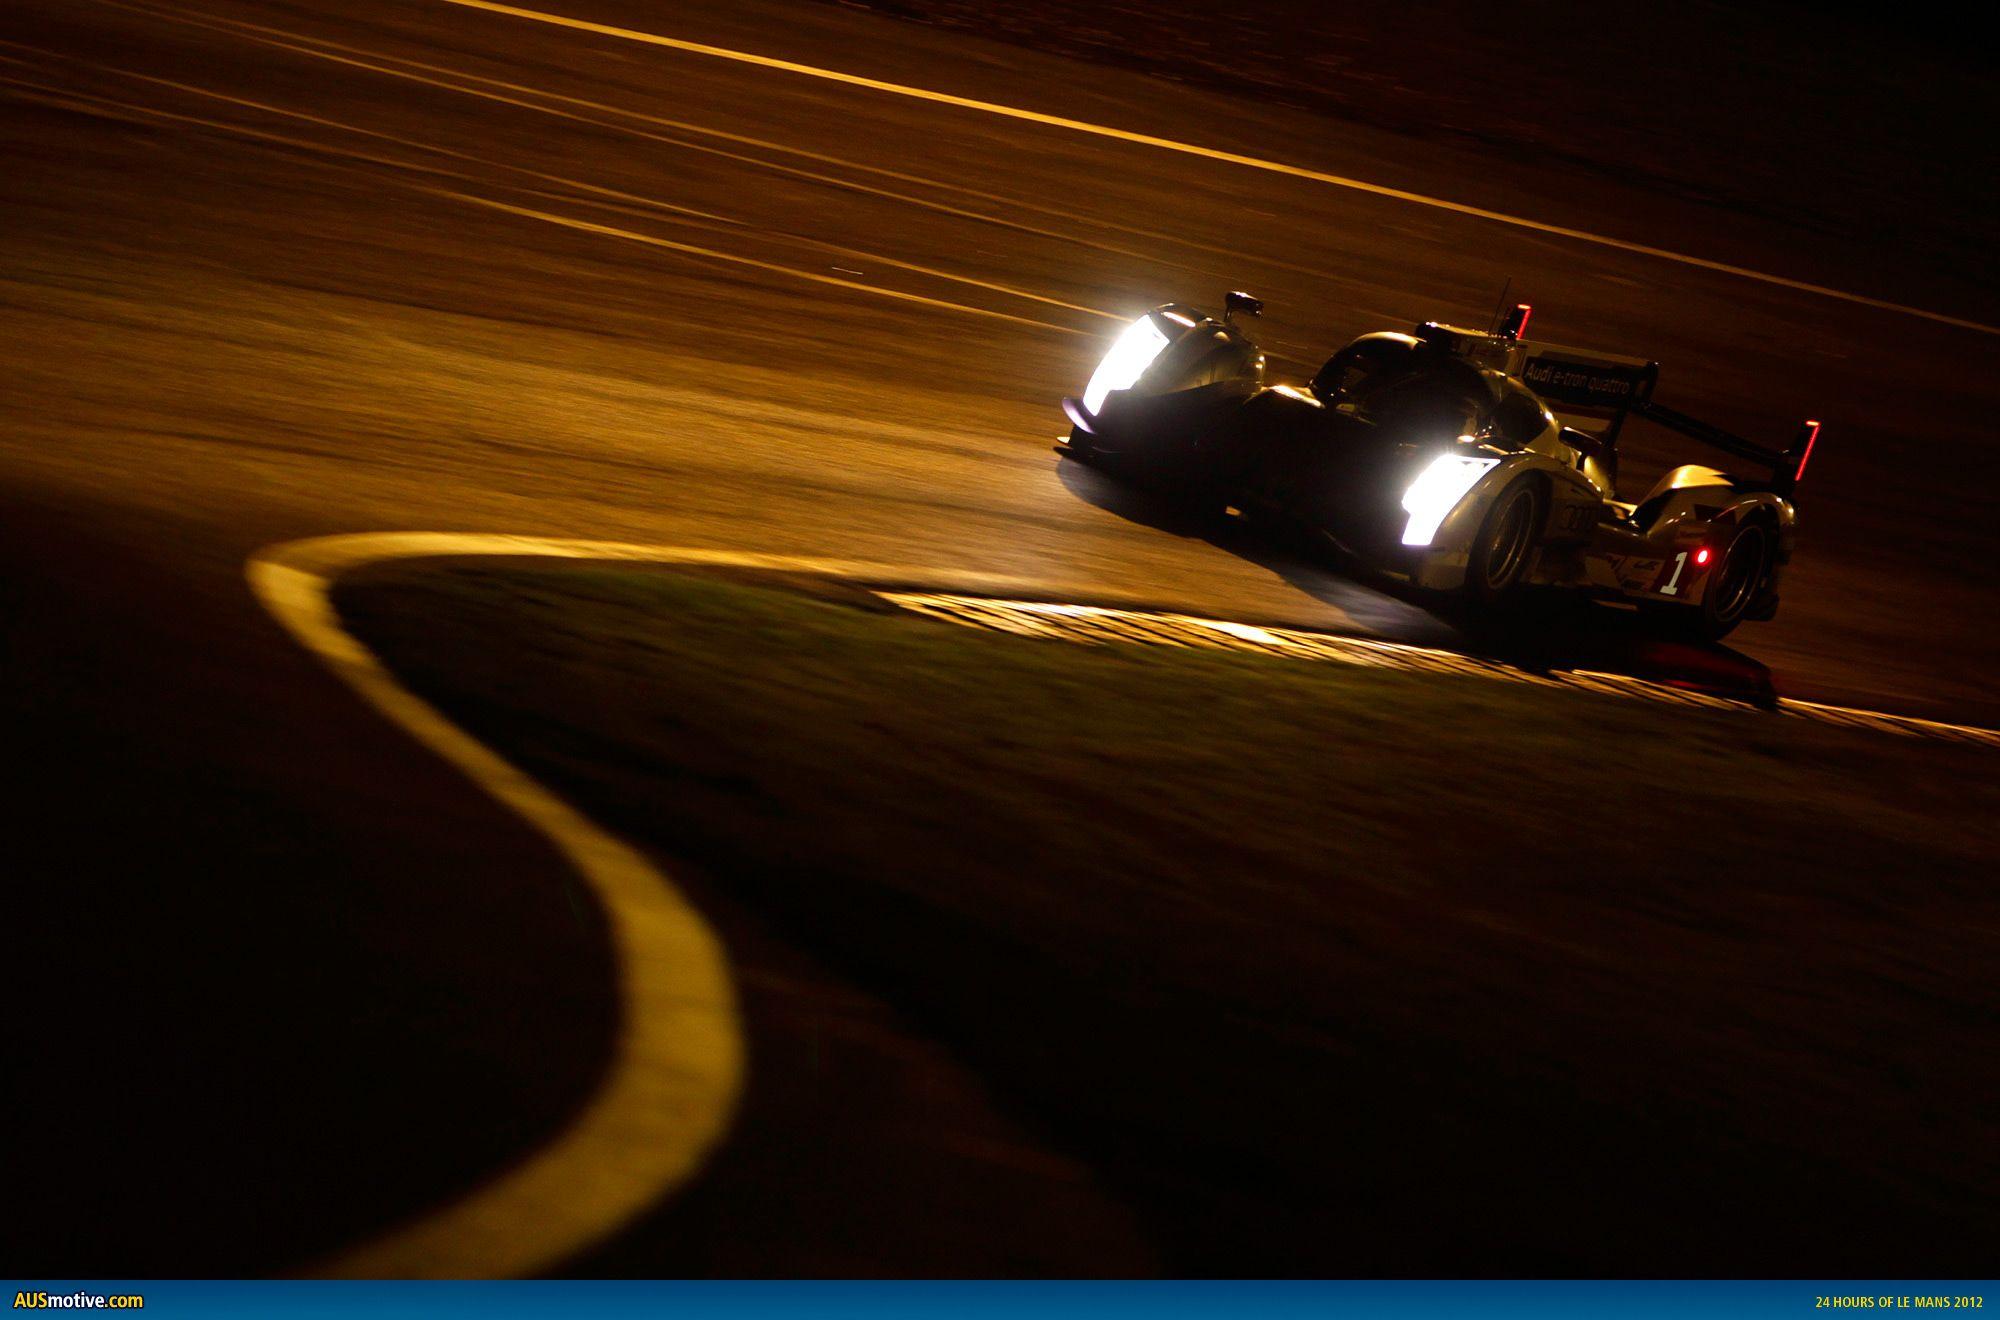 AUSmotive.com 2012 Le Mans 24h: Audi photo gallery